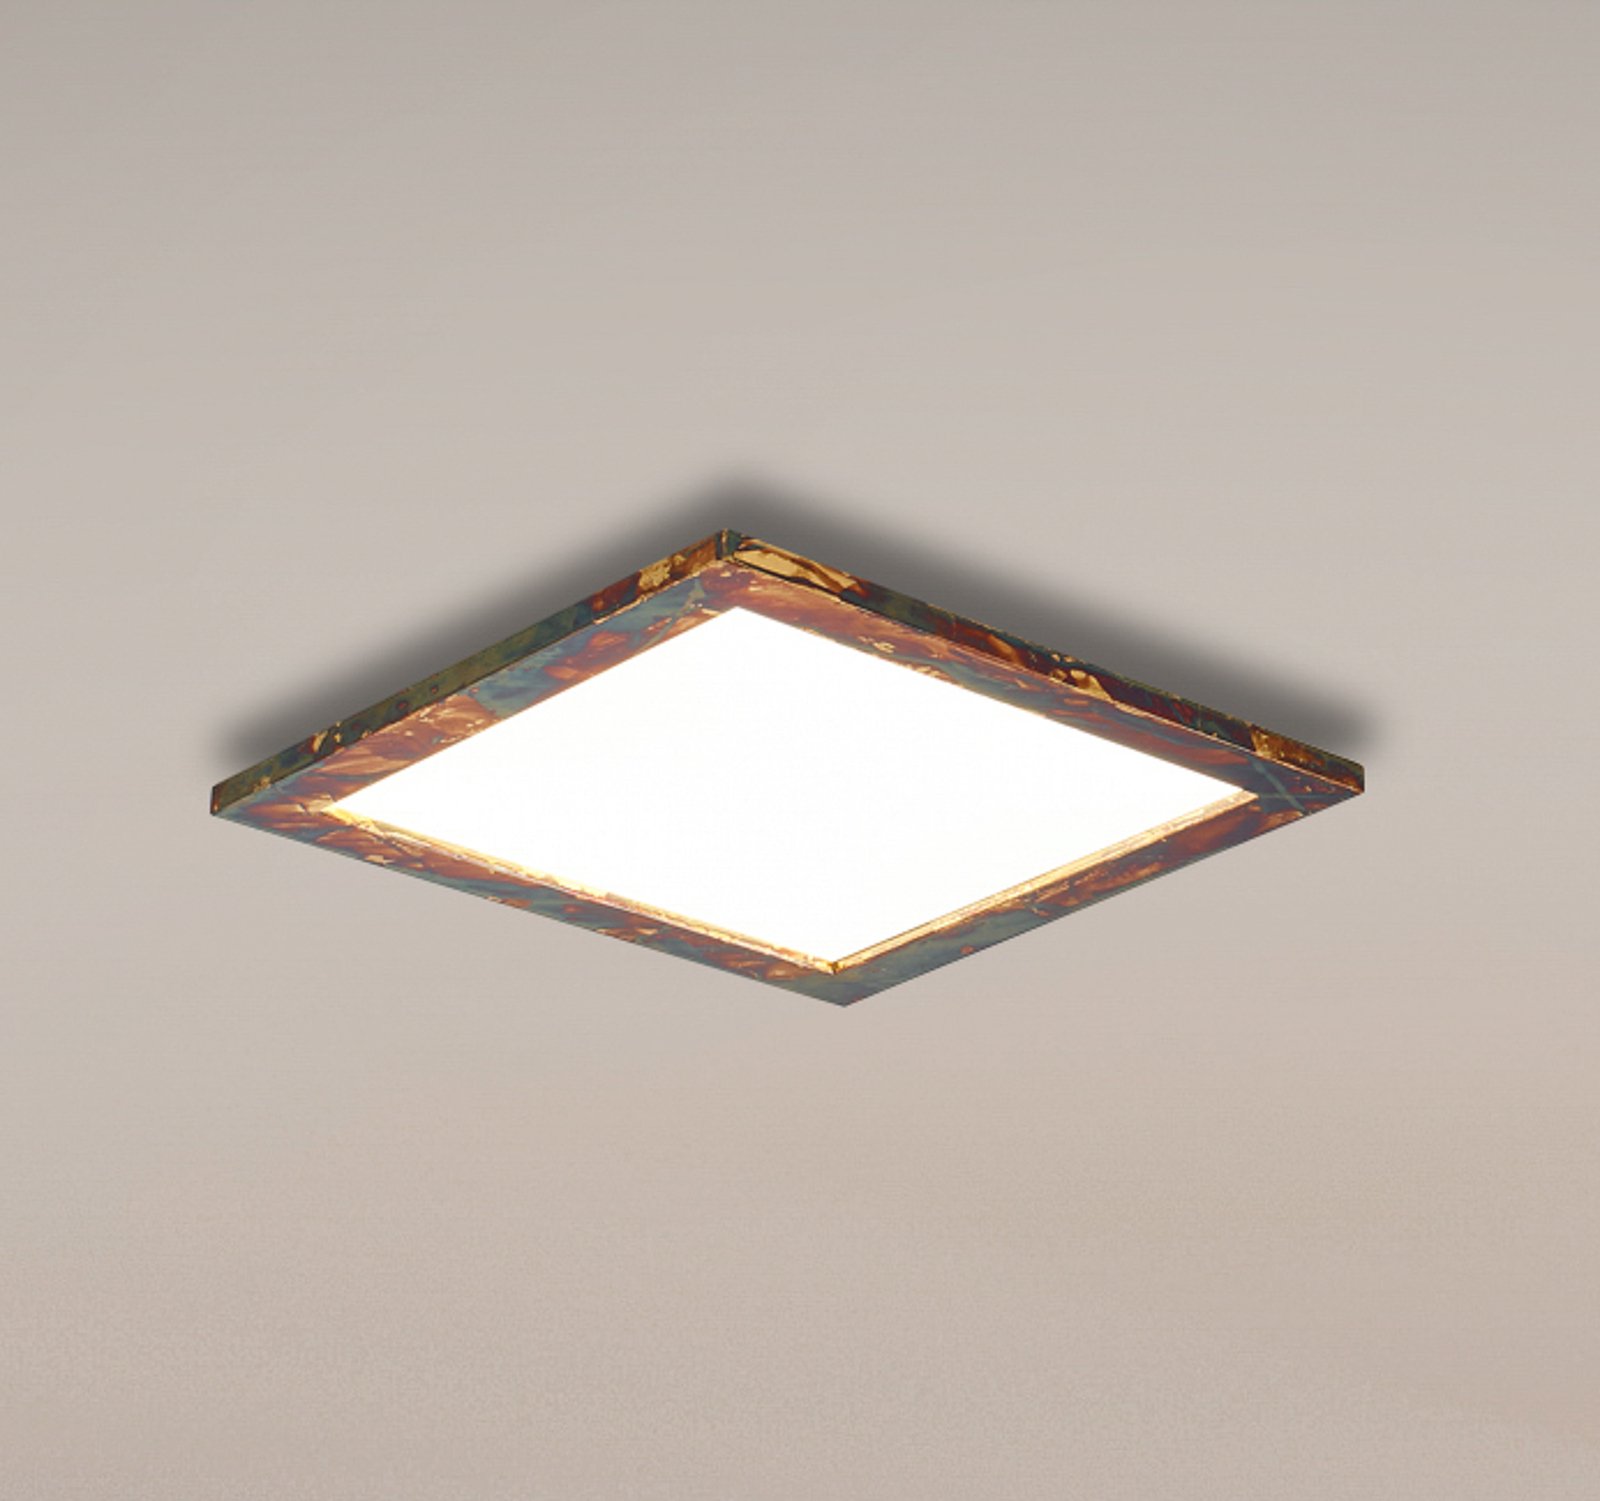 Quitani Aurinor LED panel, gold-coloured, 45 cm